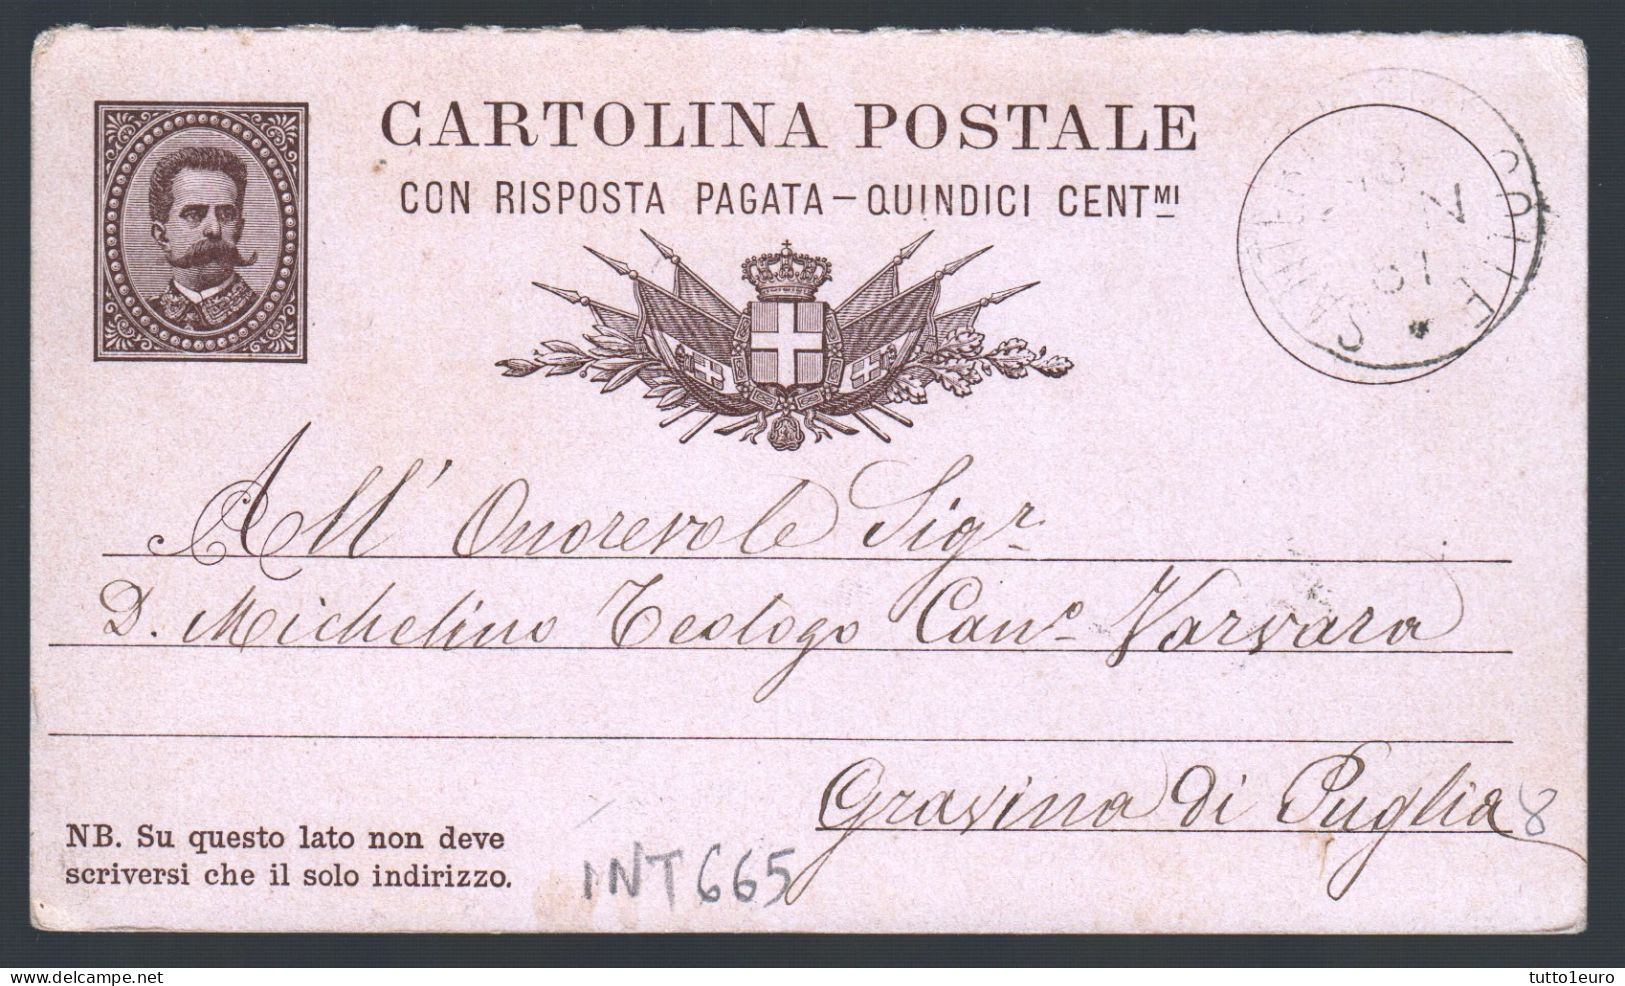 CARTOLINA POSTALE SPEDITA DA  SANTERAMO IN COLLE A GRAVINA IN PUGLIA NEL 1881 (INT665) - Ganzsachen